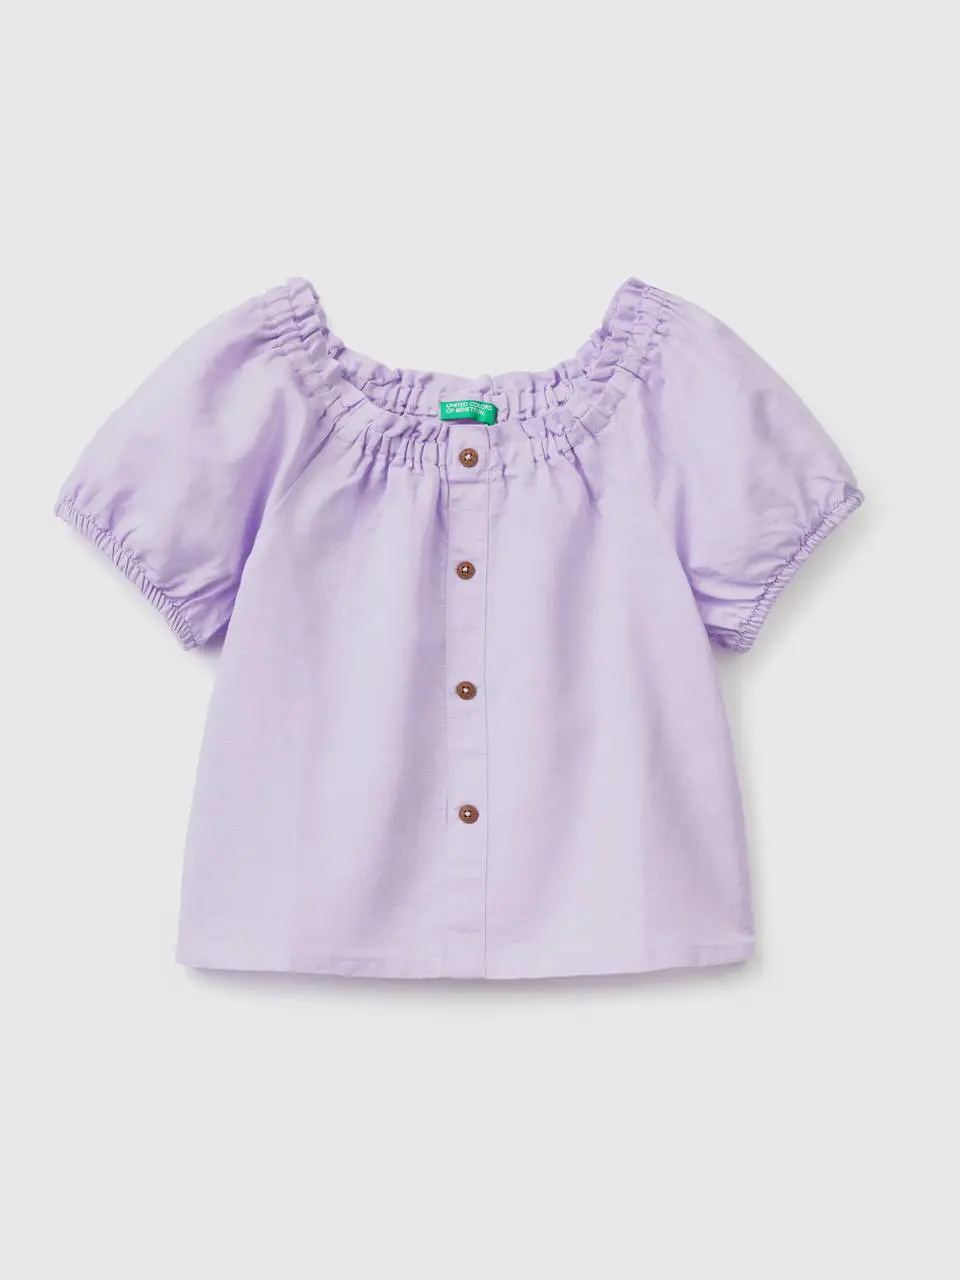 Benetton short sleeve blouse in linen blend. 1